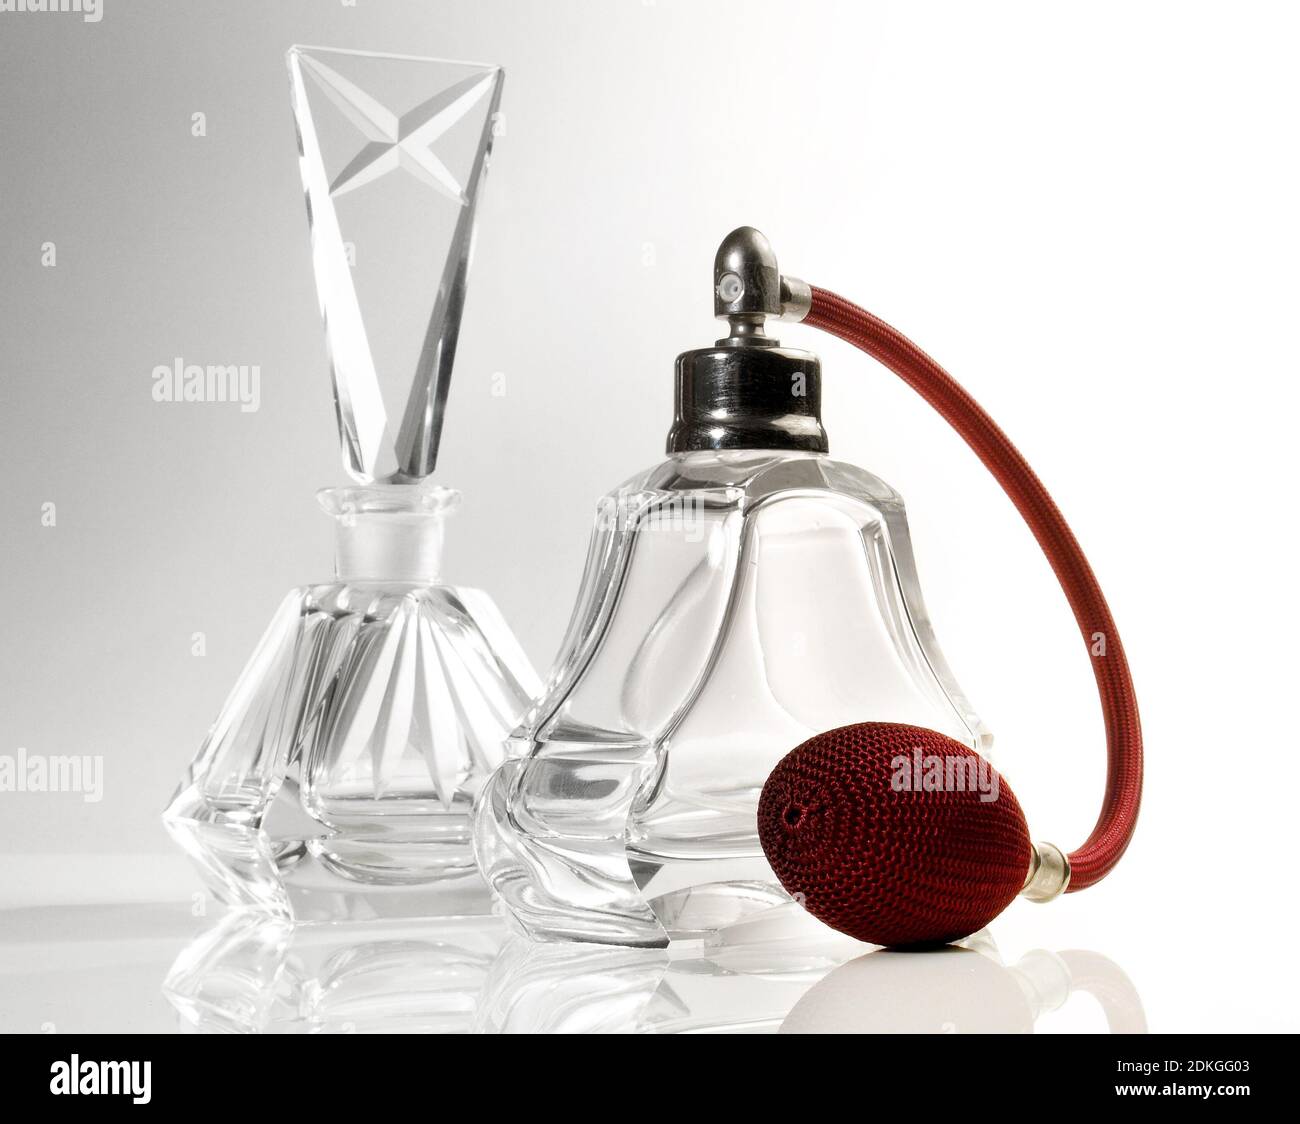 Alte Vintage Miniatur Duft oder Parfüm Flasche Korken Remover  Stockfotografie - Alamy